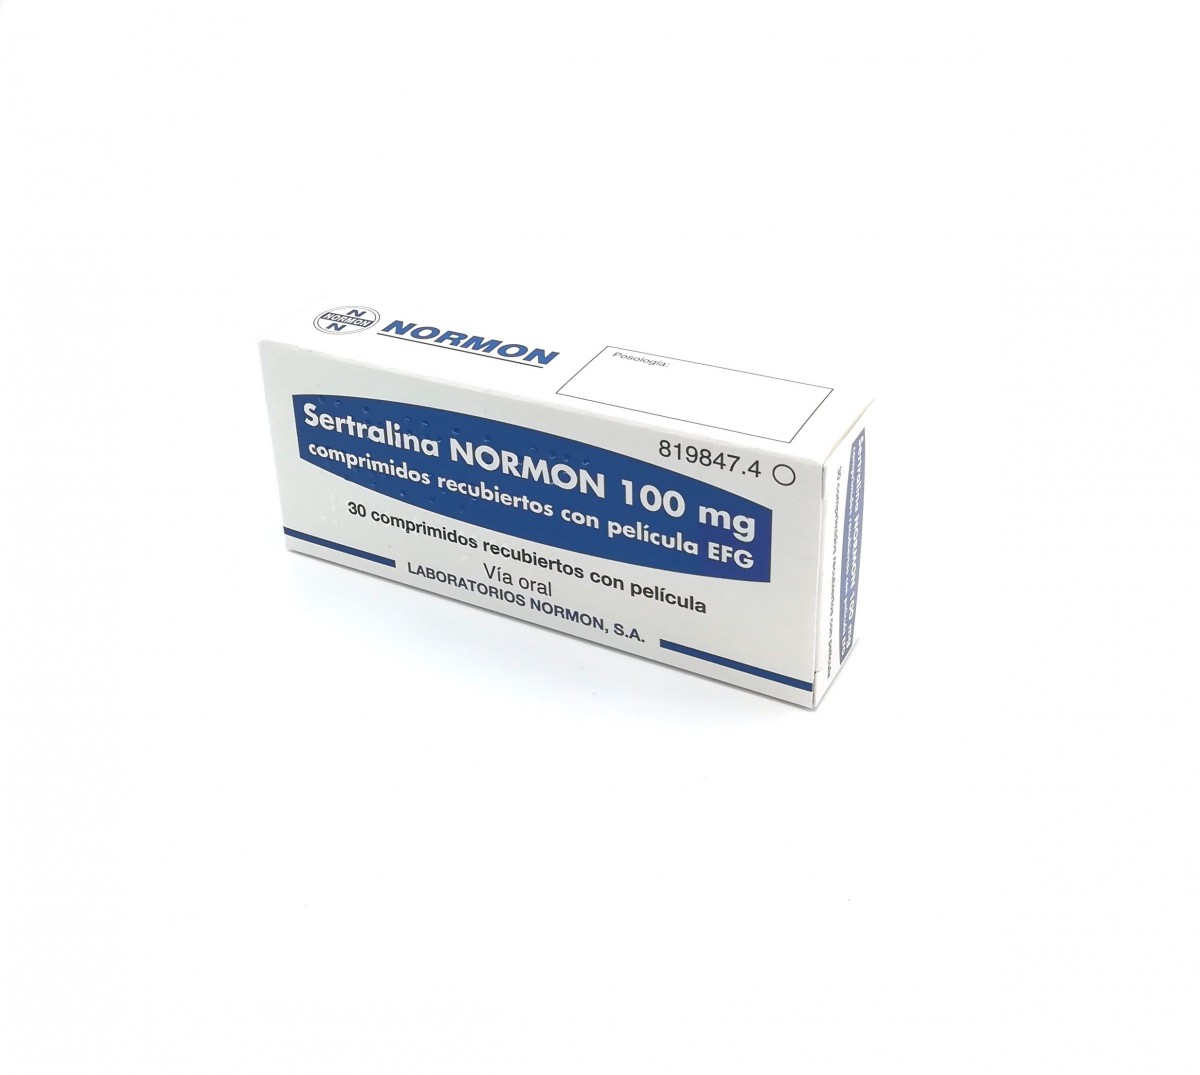 SERTRALINA NORMON 100 mg COMPRIMIDOS RECUBIERTOS CON PELICULA EFG, 30 comprimidos fotografía del envase.